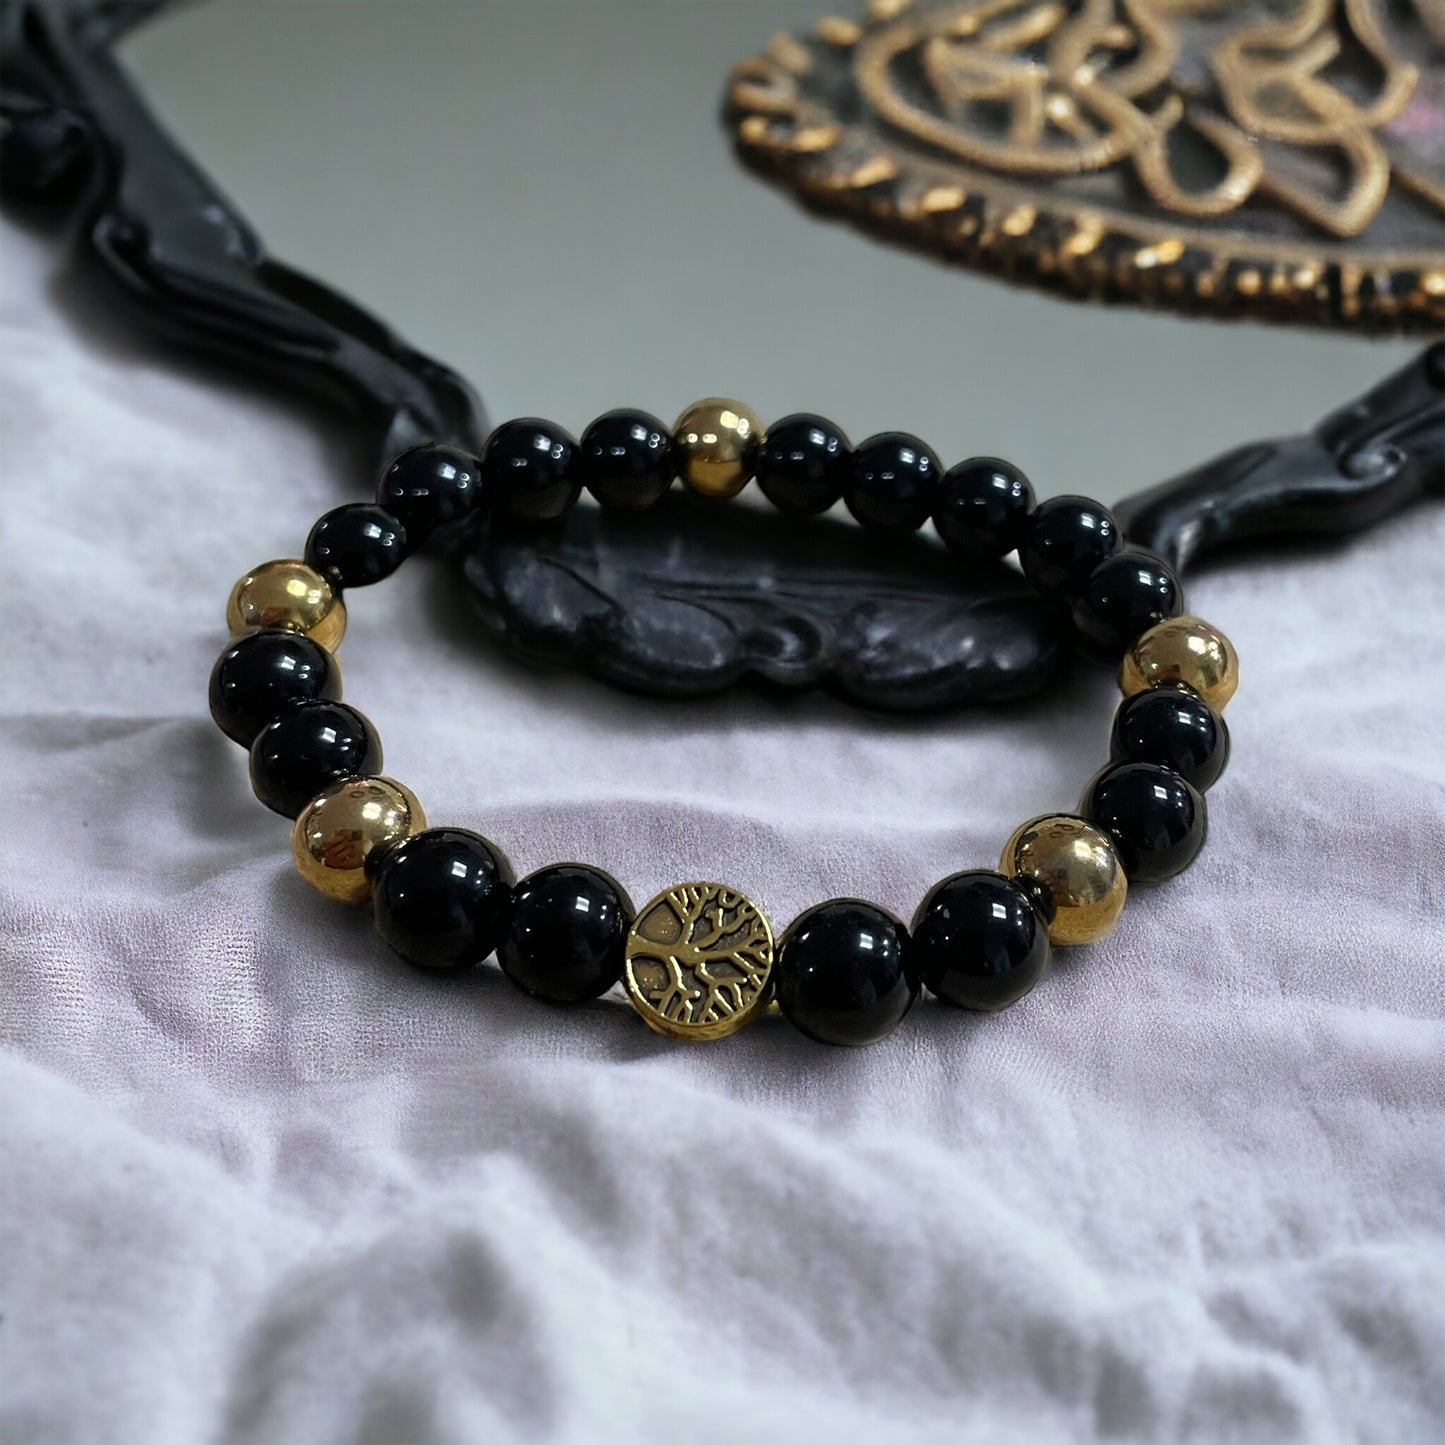 Edelstein Obsidian Armband mit Baum des Lebens, Silber- oder goldfarben